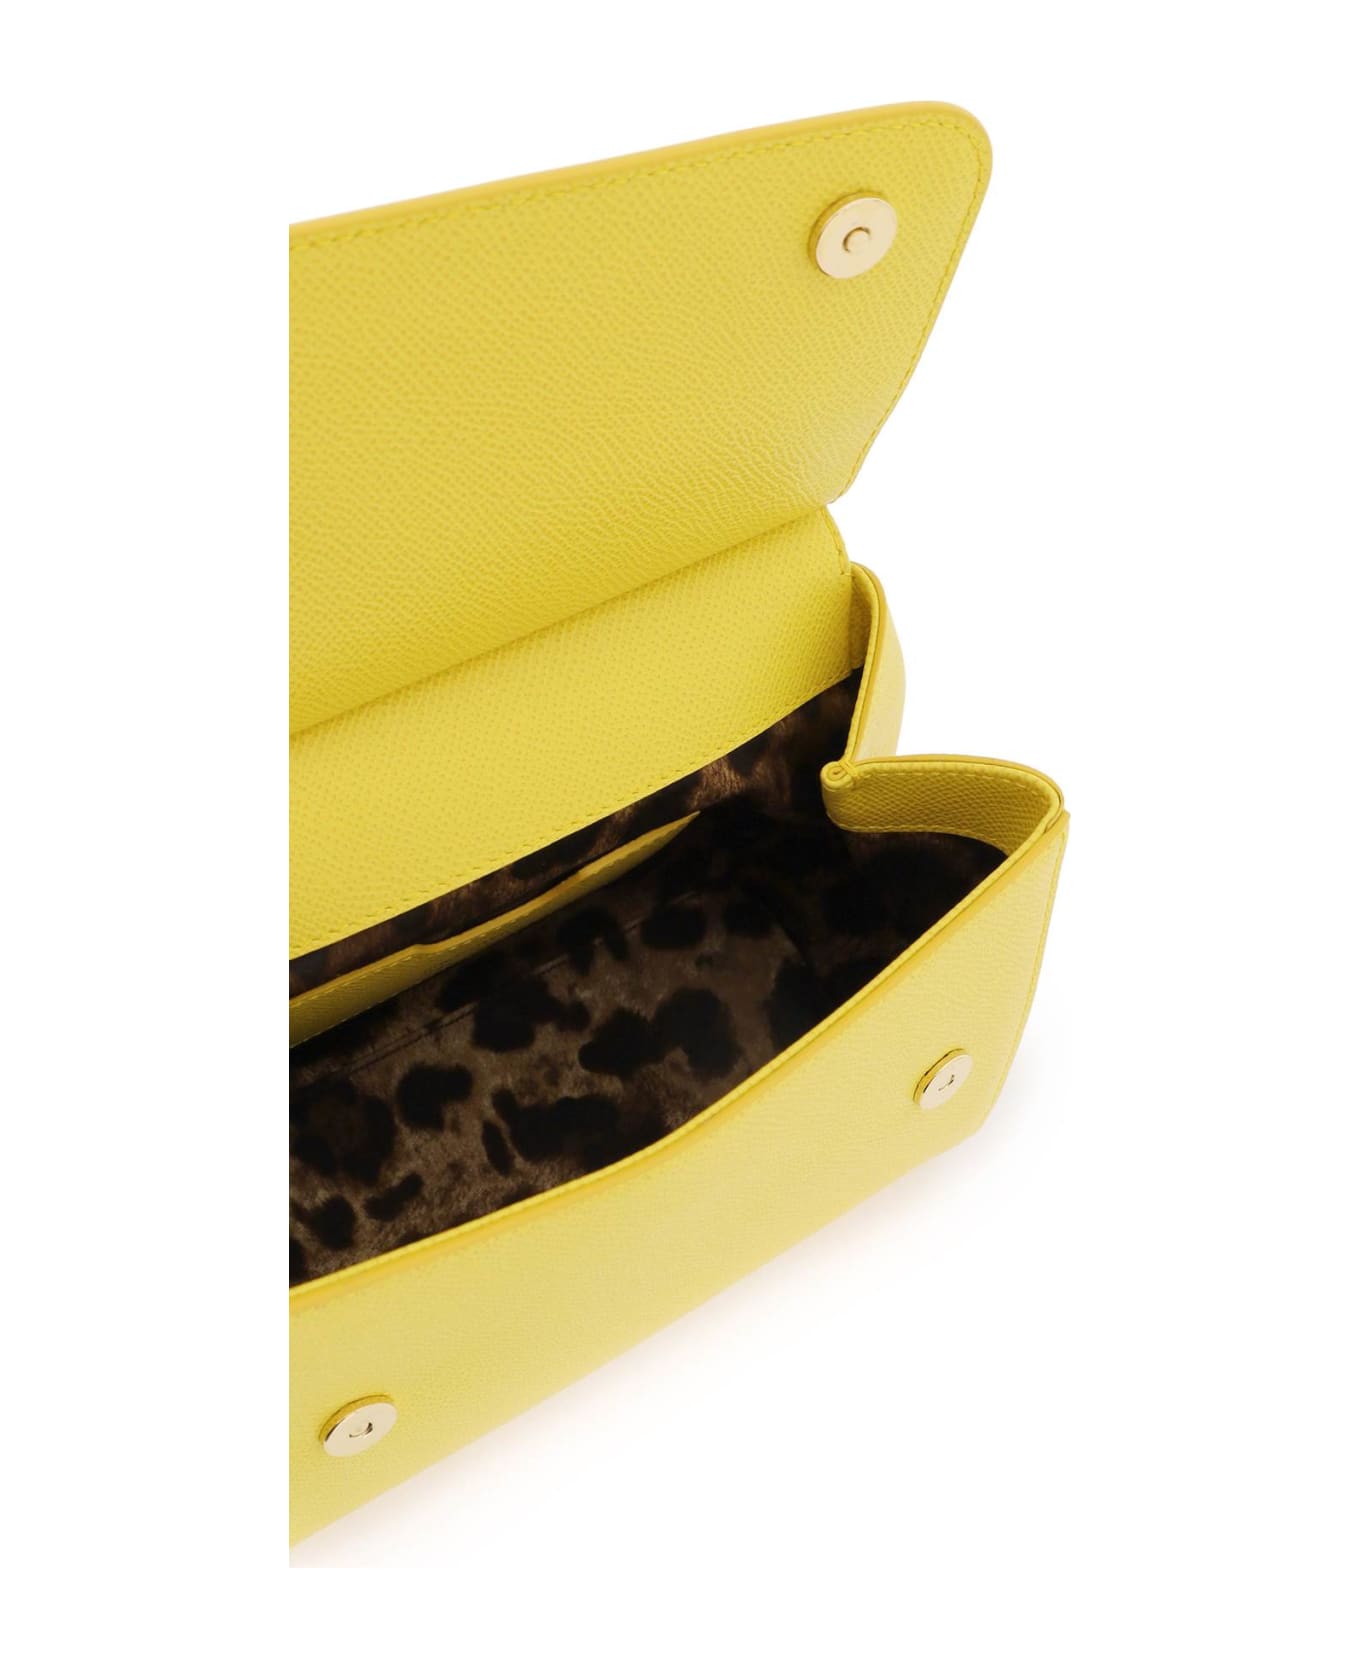 Dolce & Gabbana Sicily Handbag - GIALLO INTENSO (Yellow)